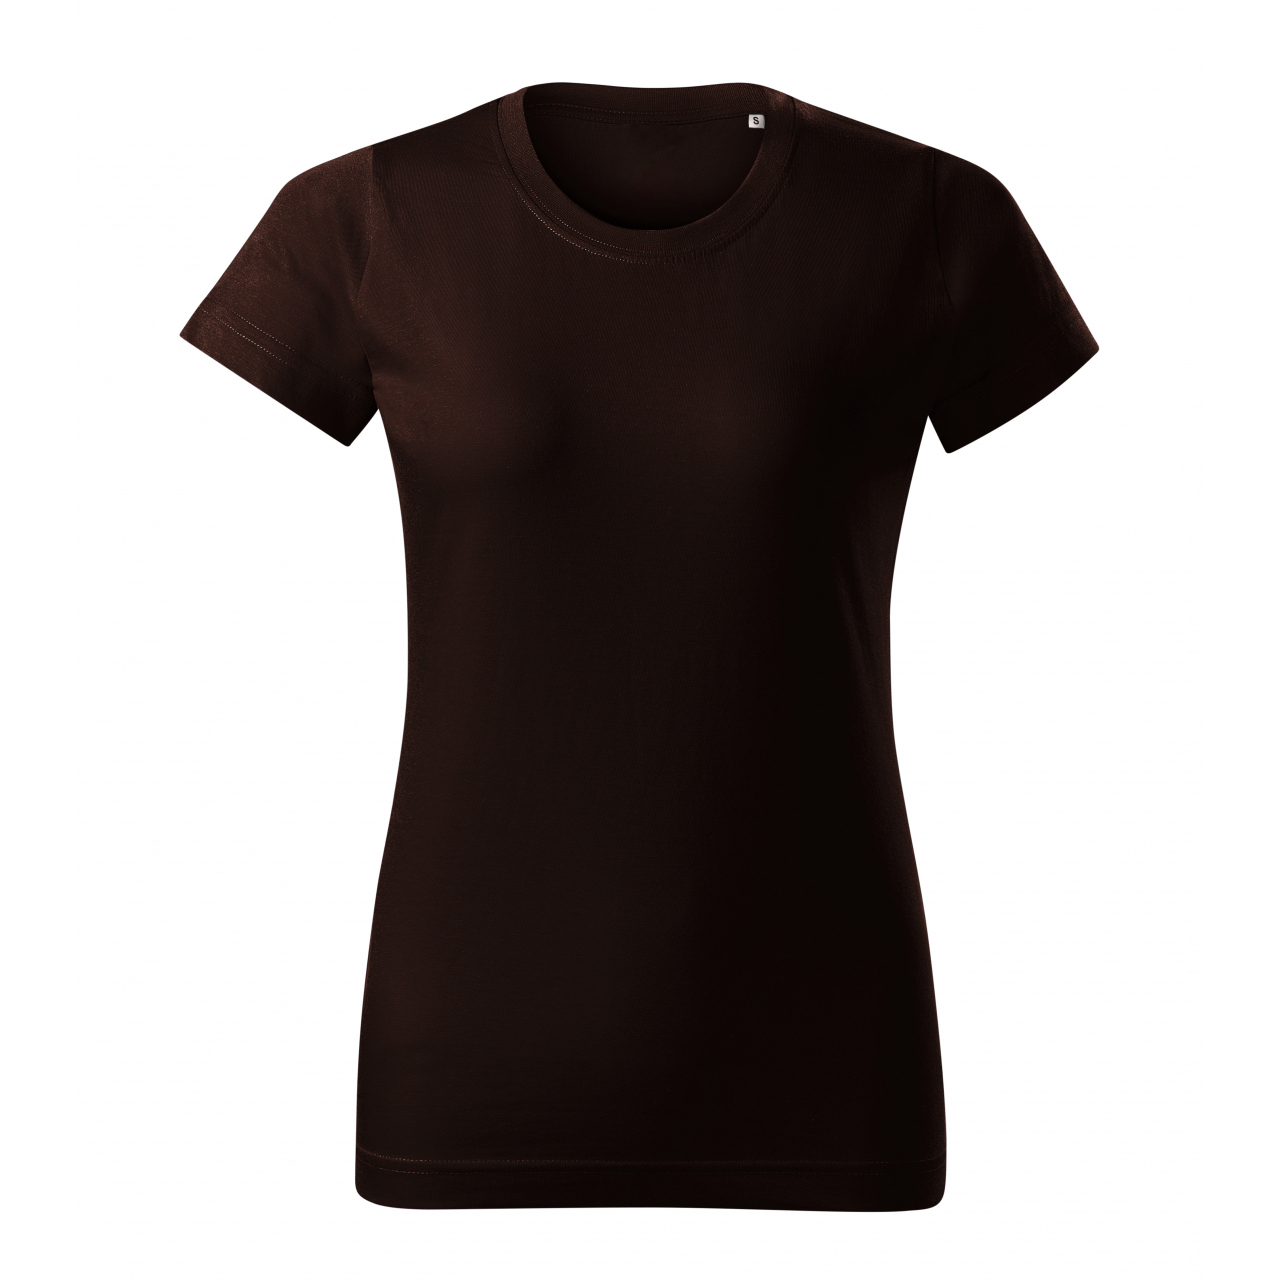 Tričko dámské Malfini Basic Free - tmavě hnědé, XL